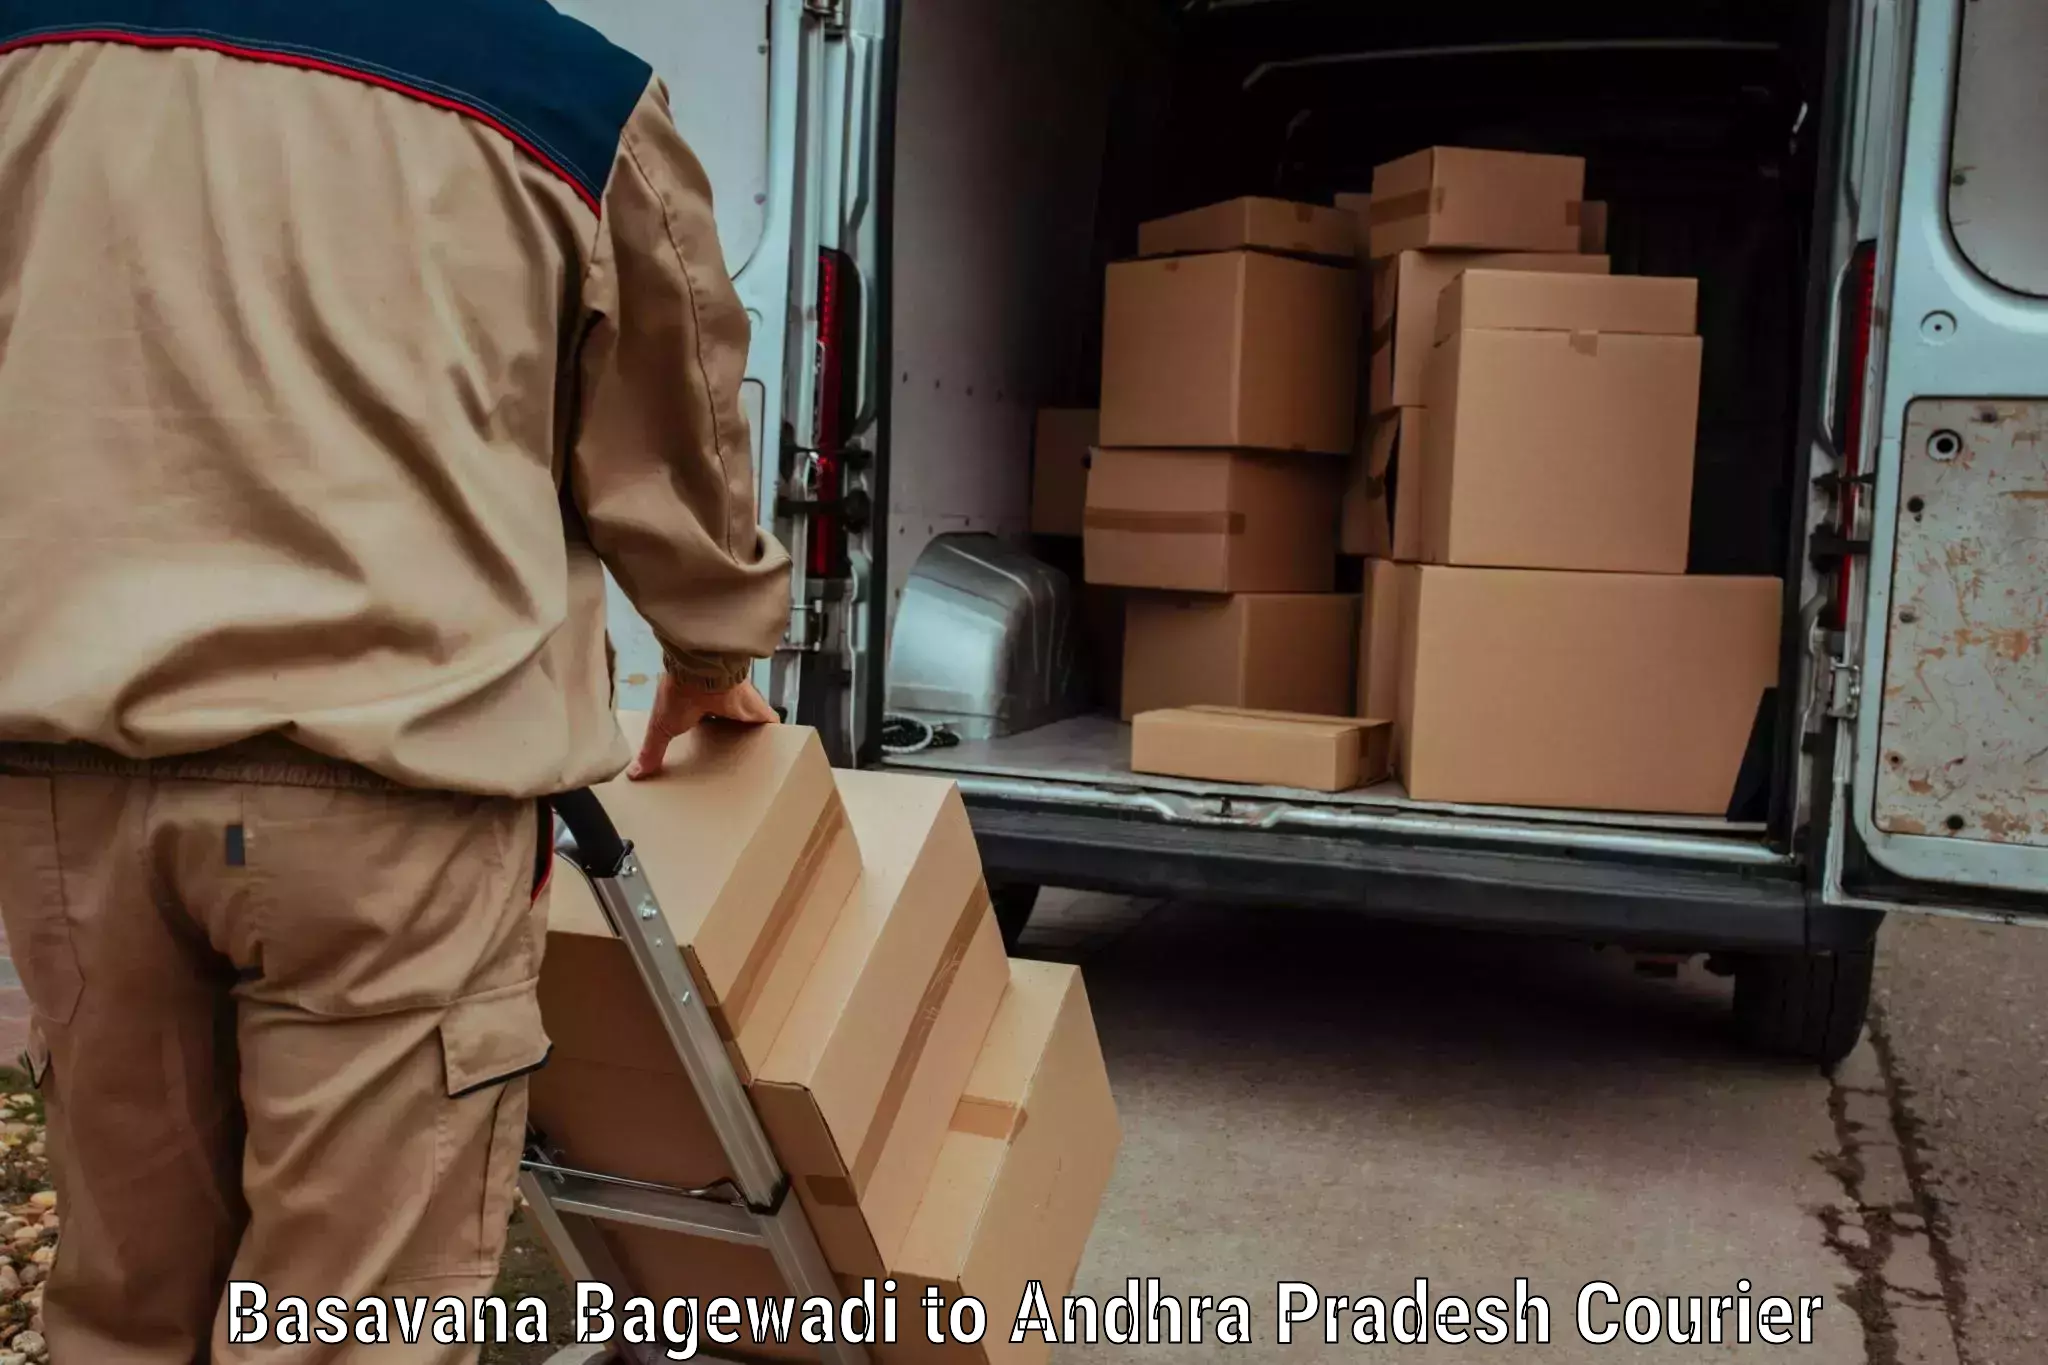 Baggage transport network Basavana Bagewadi to Andhra Pradesh